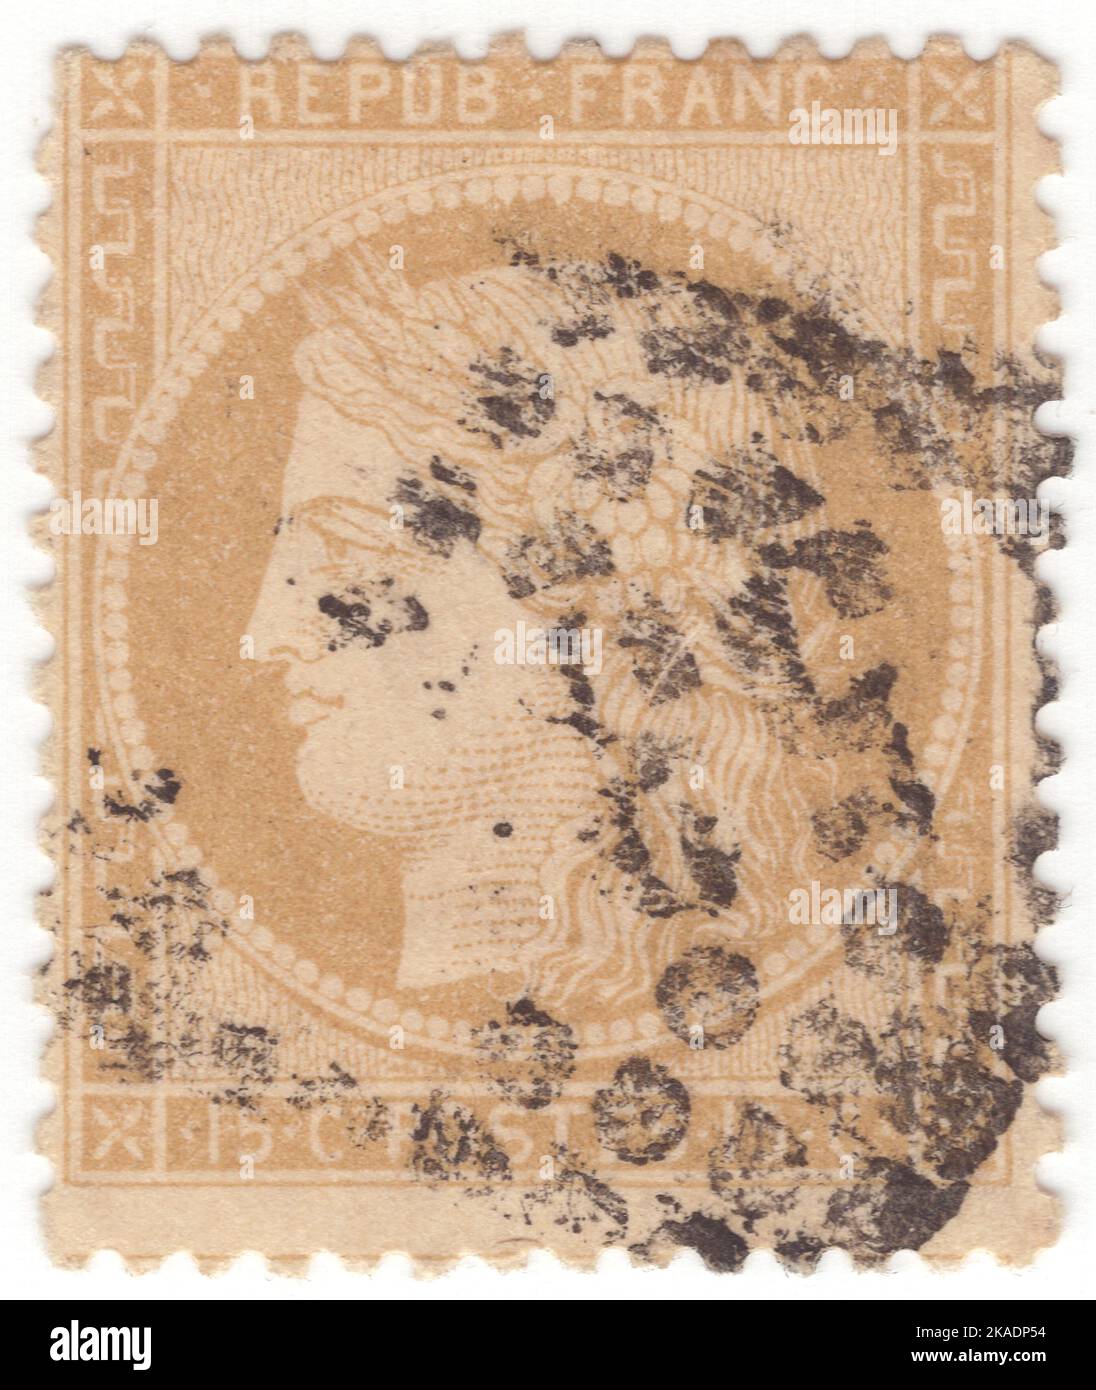 FRANCIA - 1871: Un bister de 15 centésimas sobre sello postal amarillento que representa Ceres — Diosa de la agricultura, la fertilidad, los granos, la cosecha, la maternidad, la tierra, y cultivó las cosechas Foto de stock